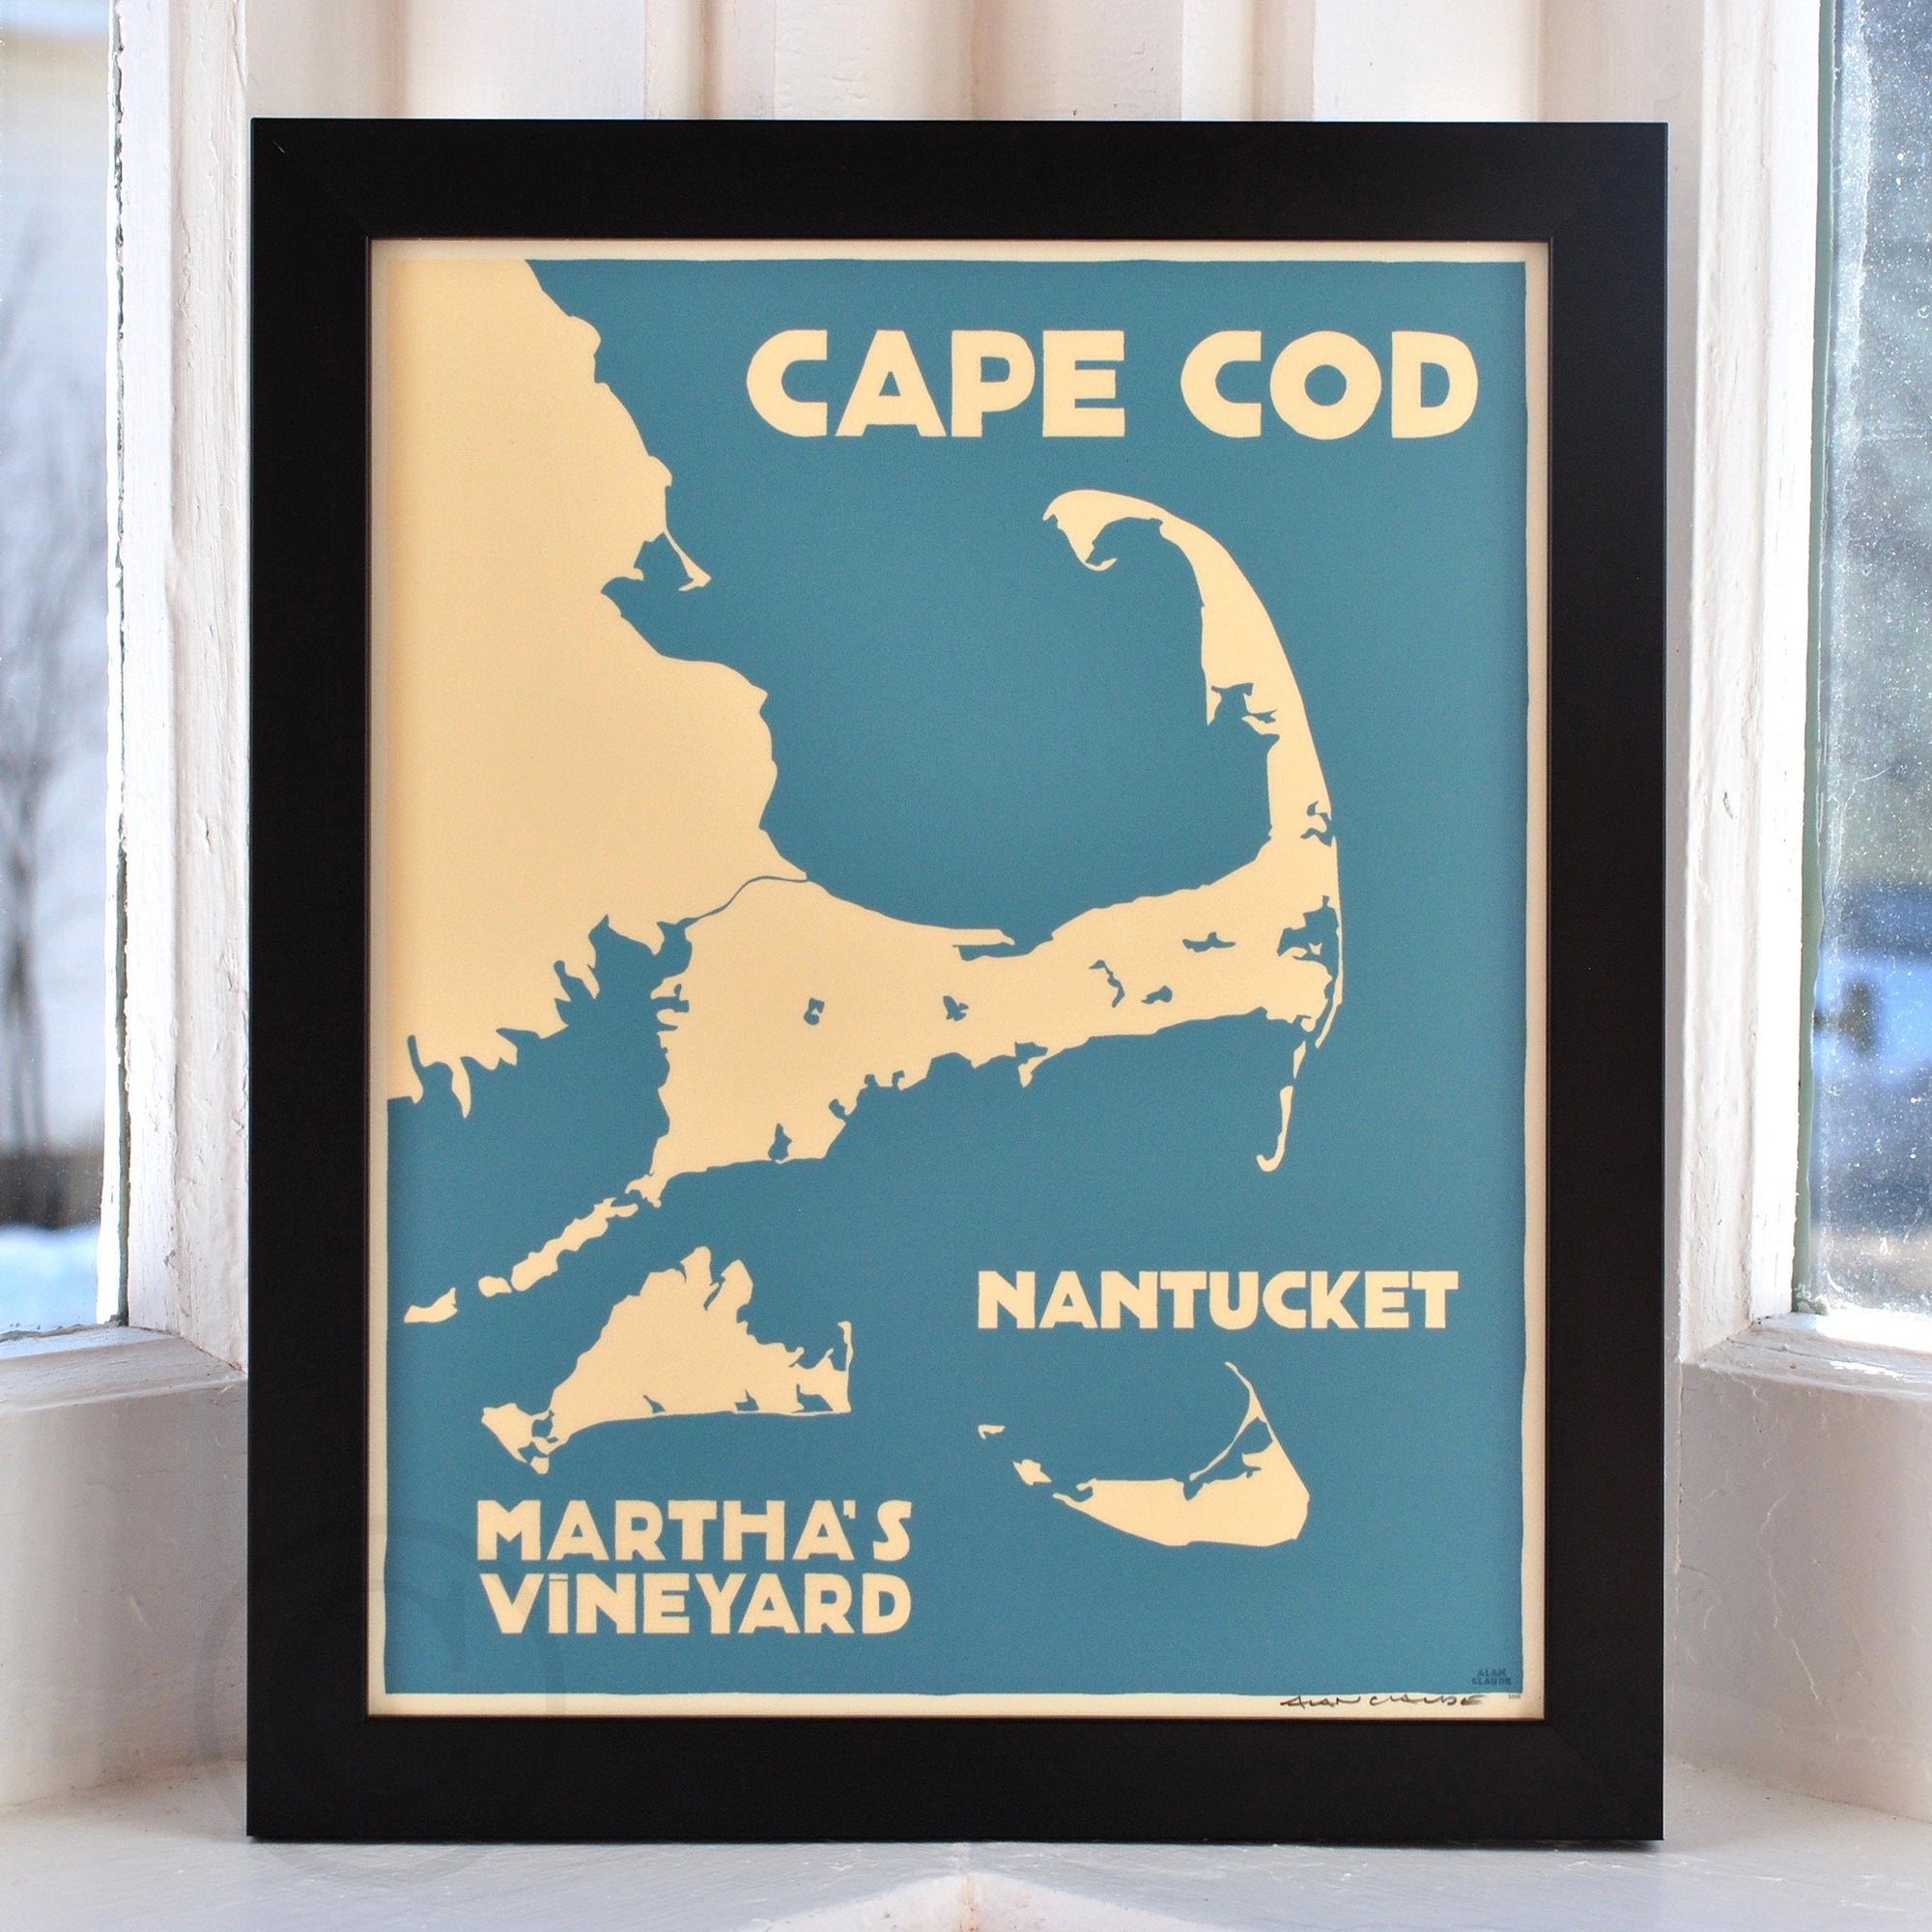 Cape Cod, Martha's Vineyard, Nantucket Map Art Print 8" x 10" Framed Travel Poster By Alan Claude - Massachusetts